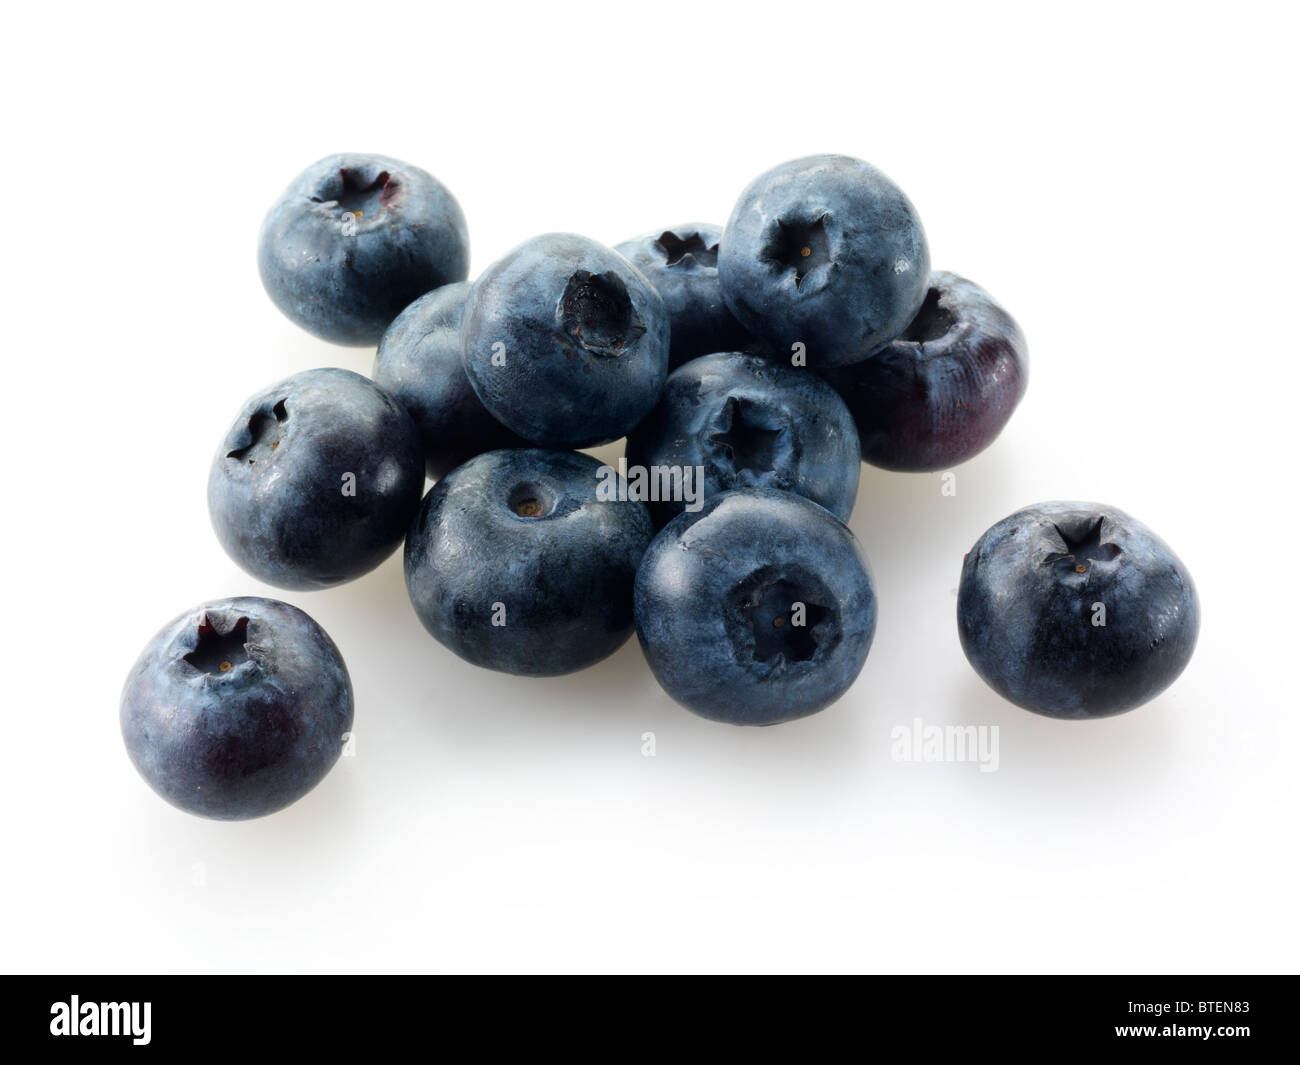 Whole blueberry fruits Stock Photo